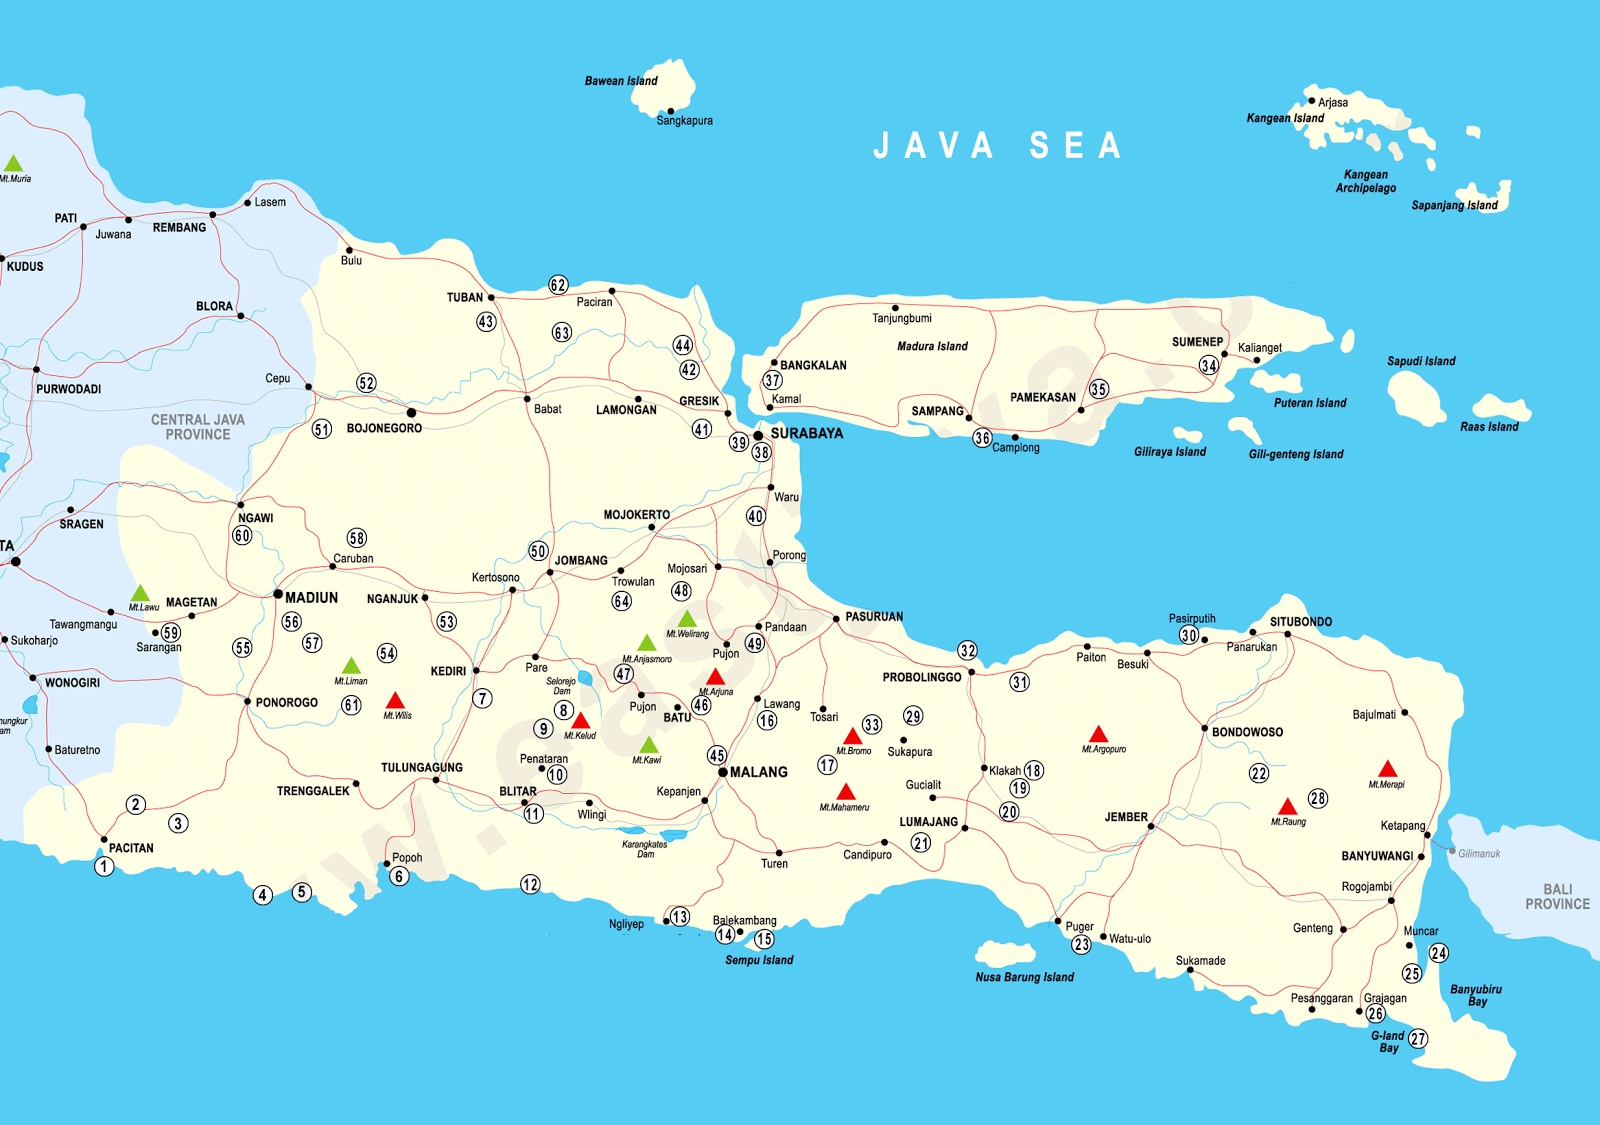 Peta Jawa Timur Lengkap Beserta Keterangan dan Gambarnya